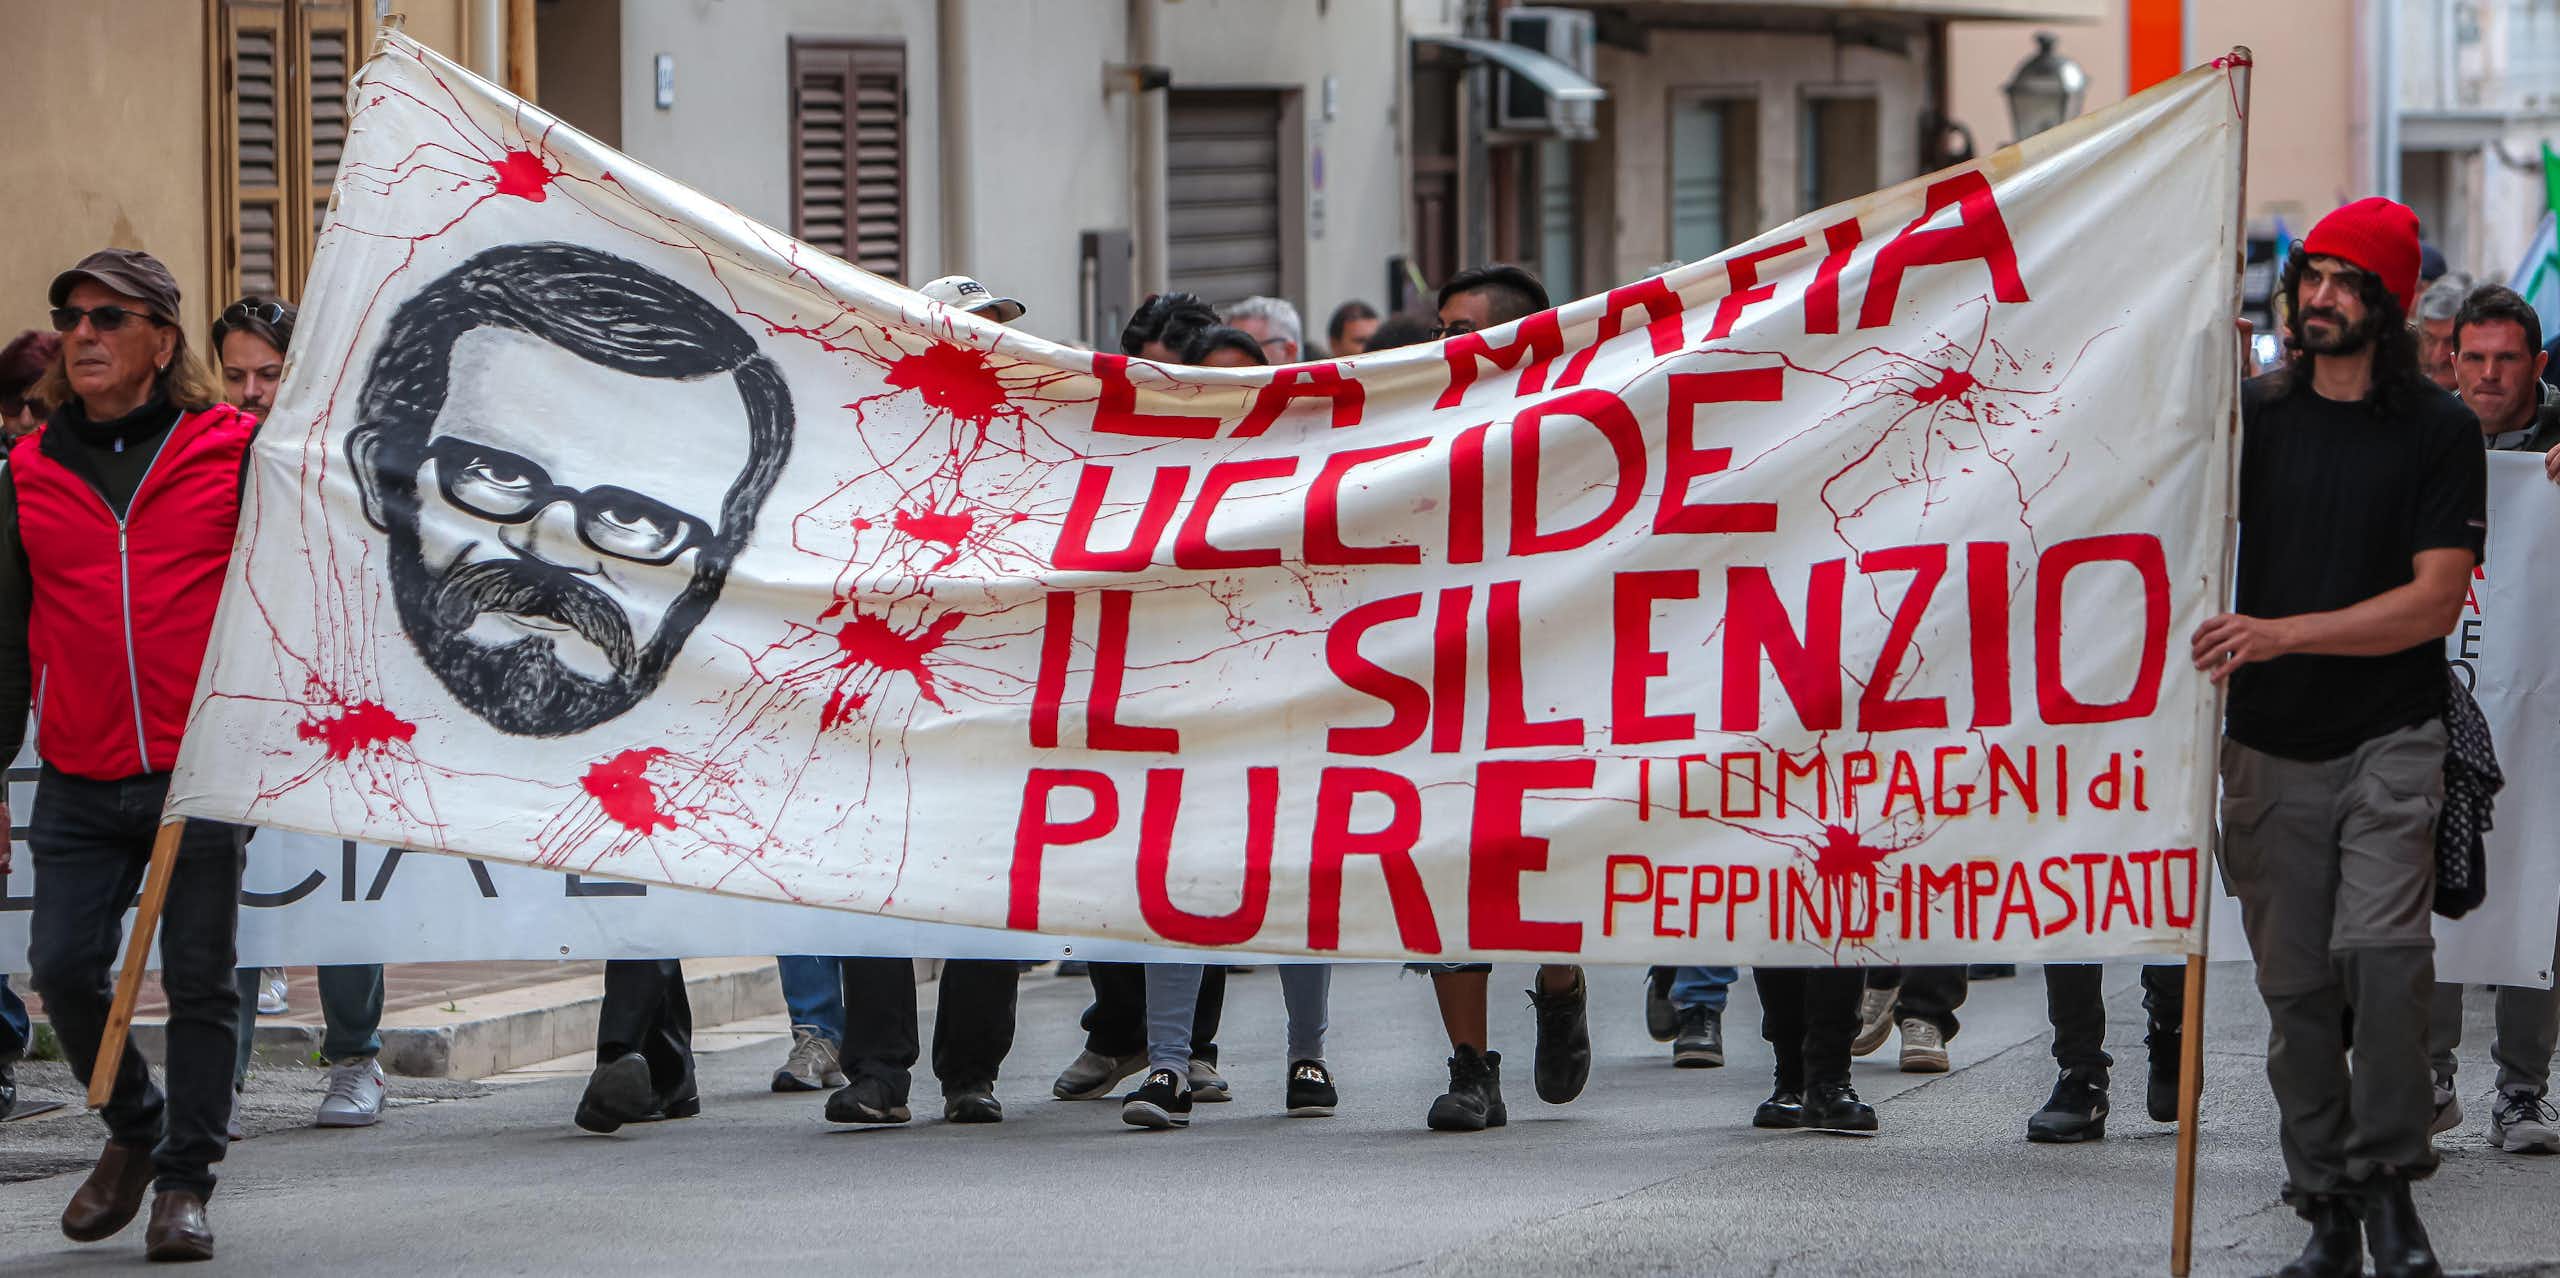 Two men lead a march carrying a banner that reads La mafia uccide il silenzio pure'.